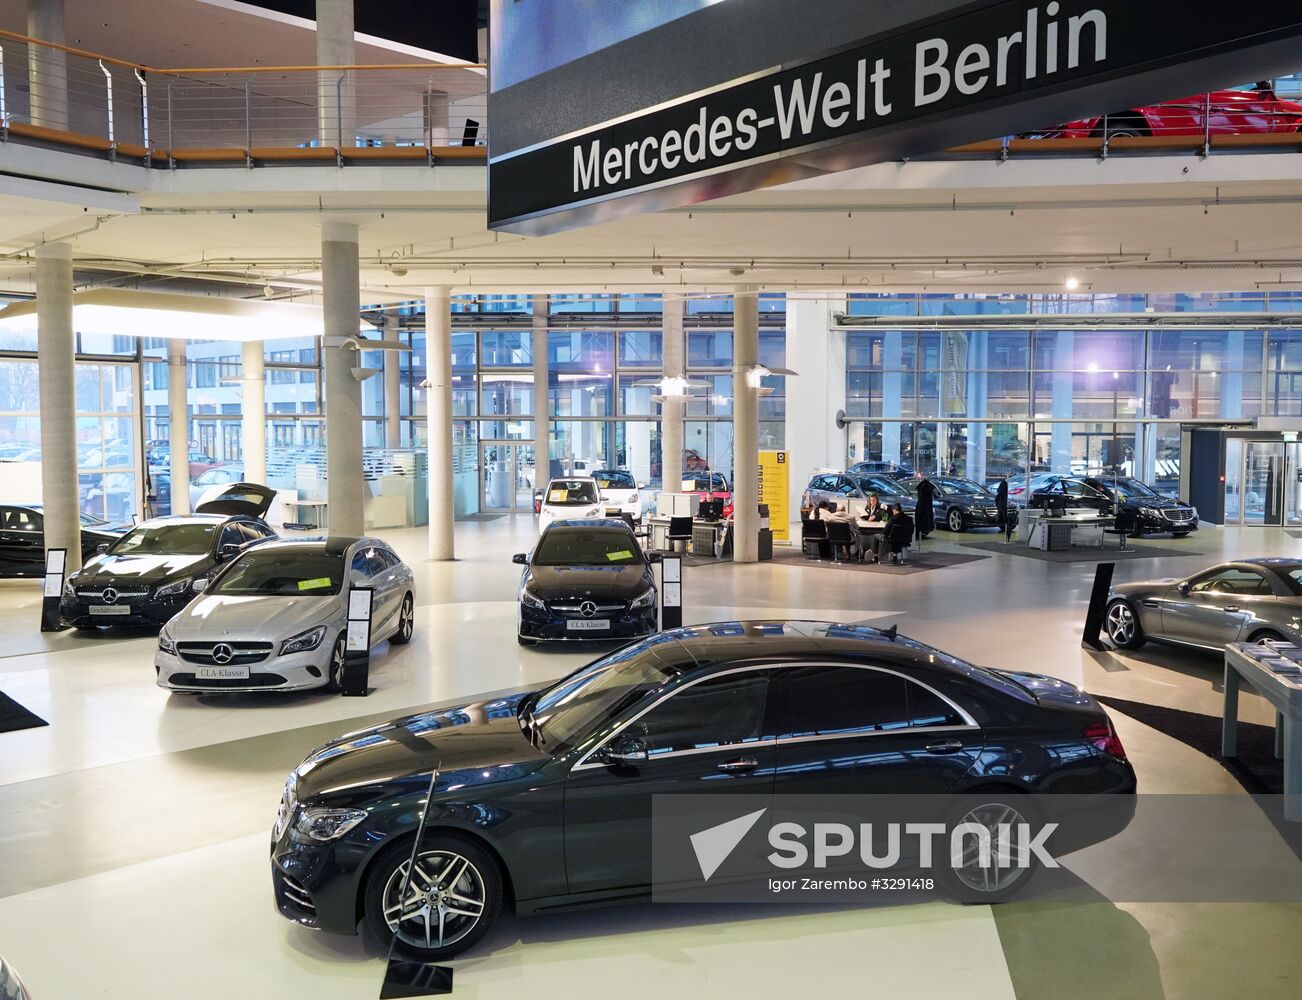 Mercedes-Benz sales office in Berlin